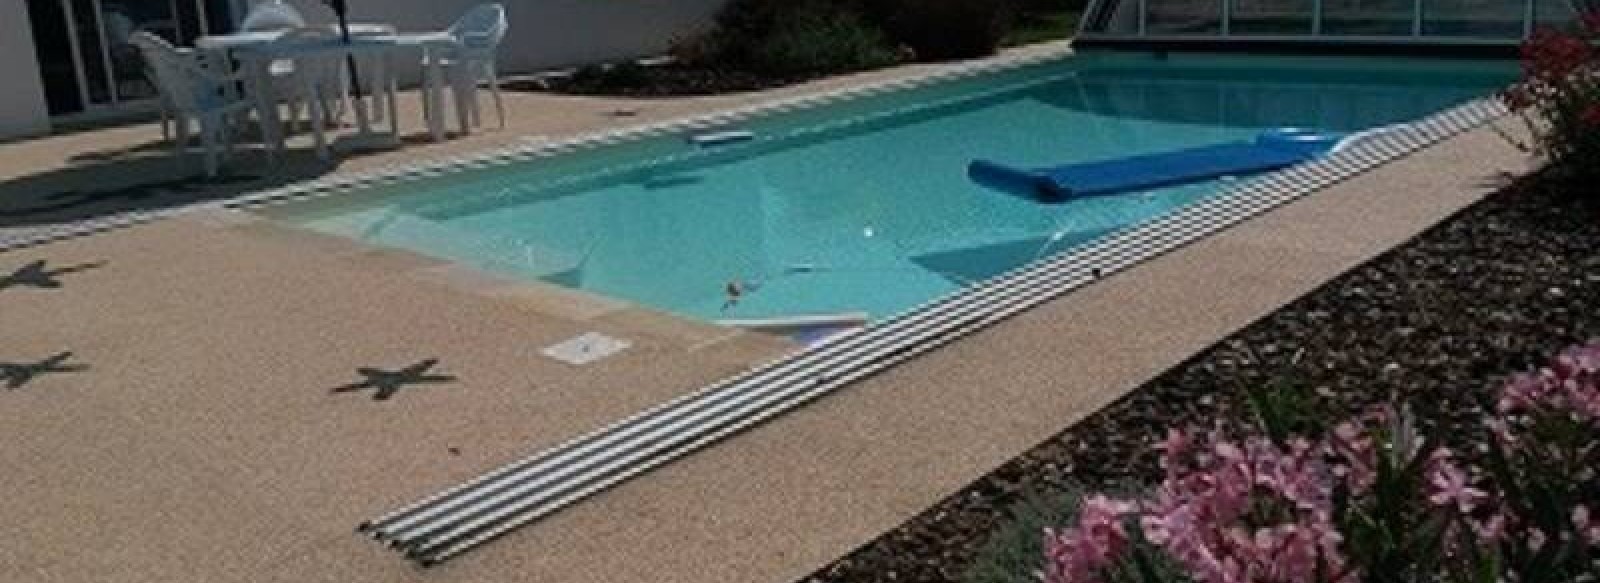 Maison de vacances avec piscine couverte chauffee a l'Ile d'Olonne